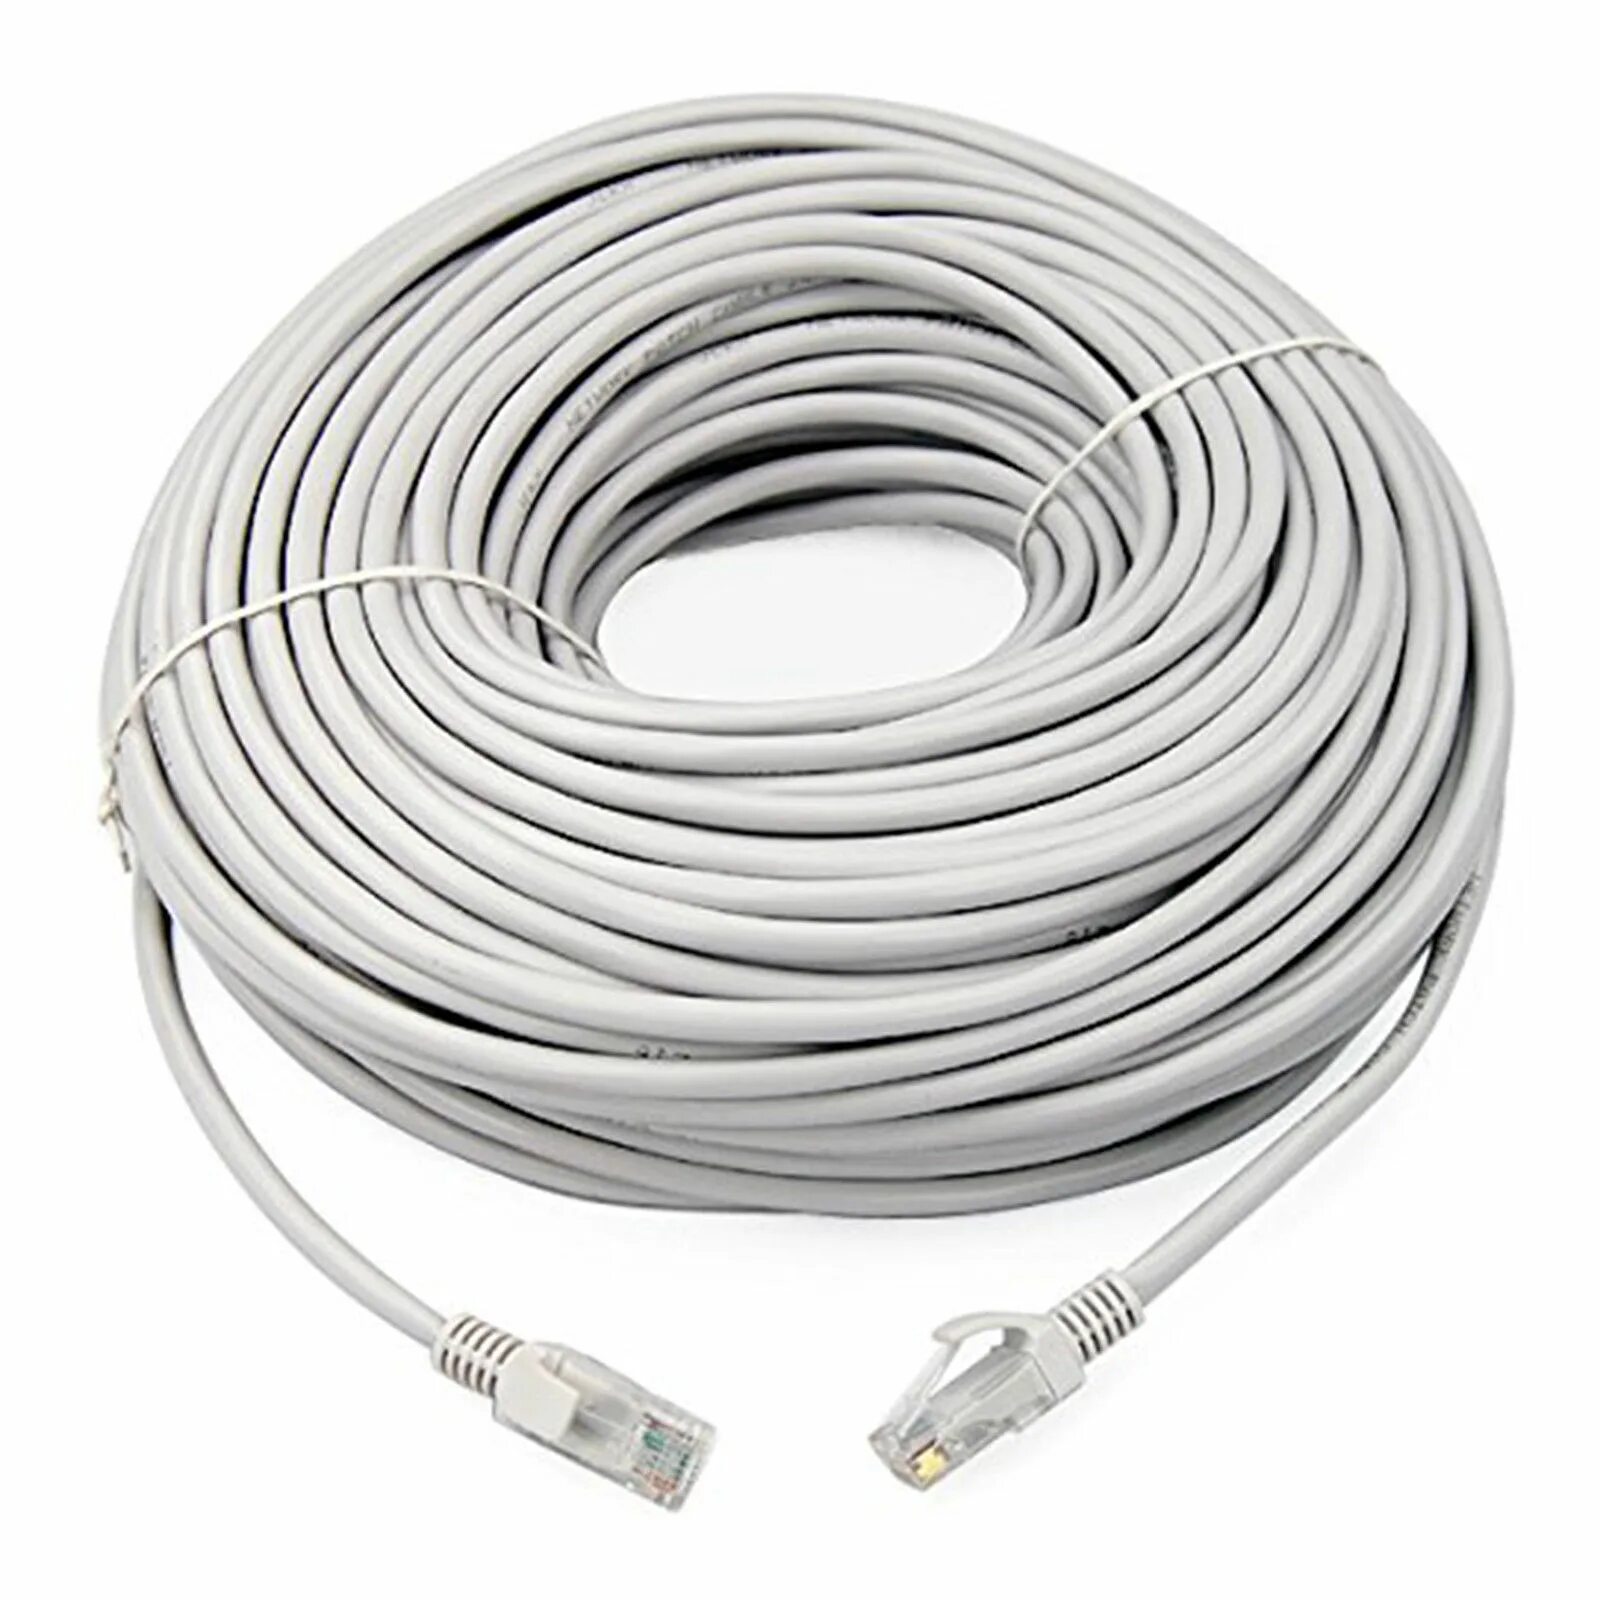 Кабель сетевой 1 м. Кабель Ethernet 5e 10 метров. 100 Метров кабель патч корд. UTP Cable RJ 45 10 M. Ethernet кабель Cat-5e - 40 м.